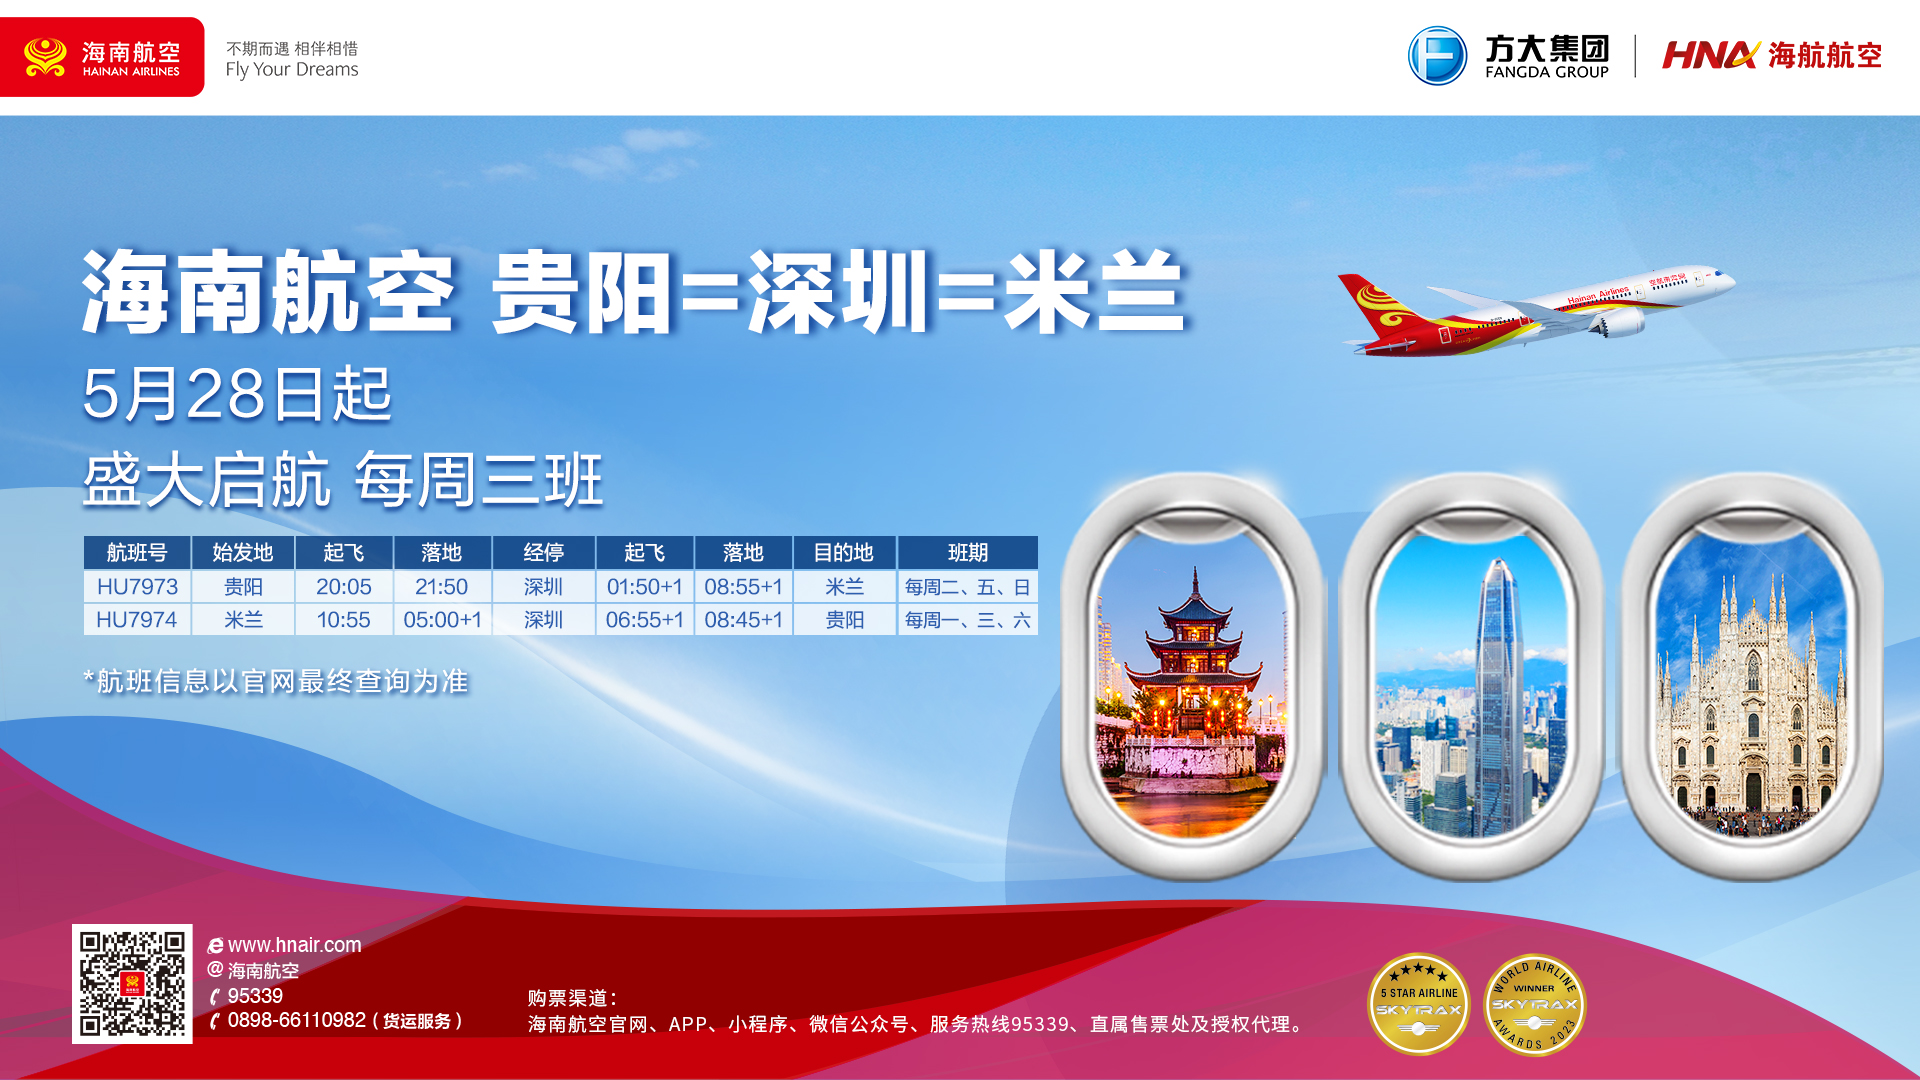 海南航空计划于5月28日起开通贵阳—深圳—米兰国际航线